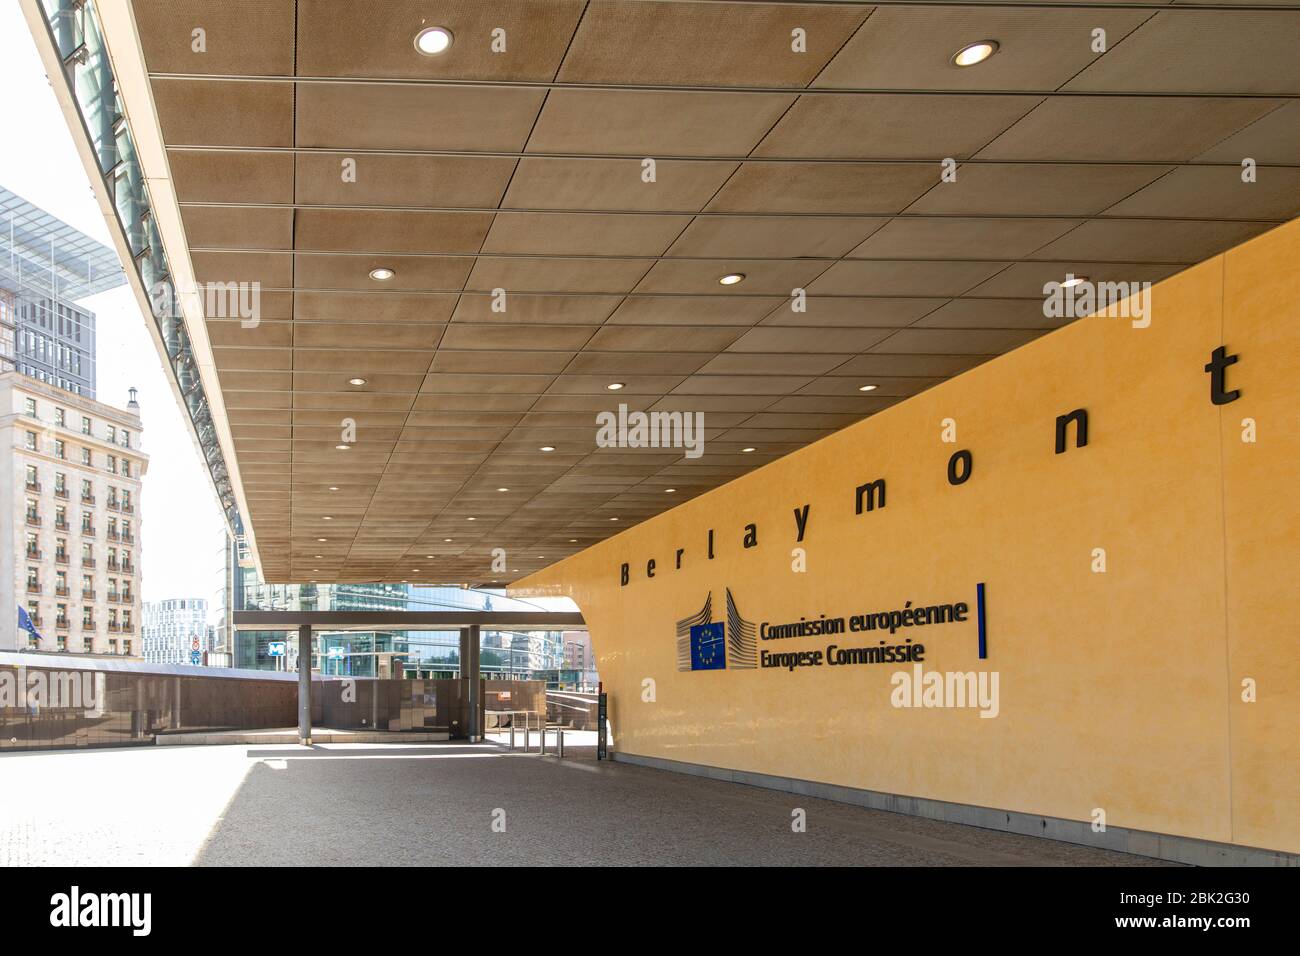 Texte sur un mur à l'entrée du bâtiment Berlaymont, siège de la Commission européenne, situé au rond-point Schuman à Bruxelles. Banque D'Images